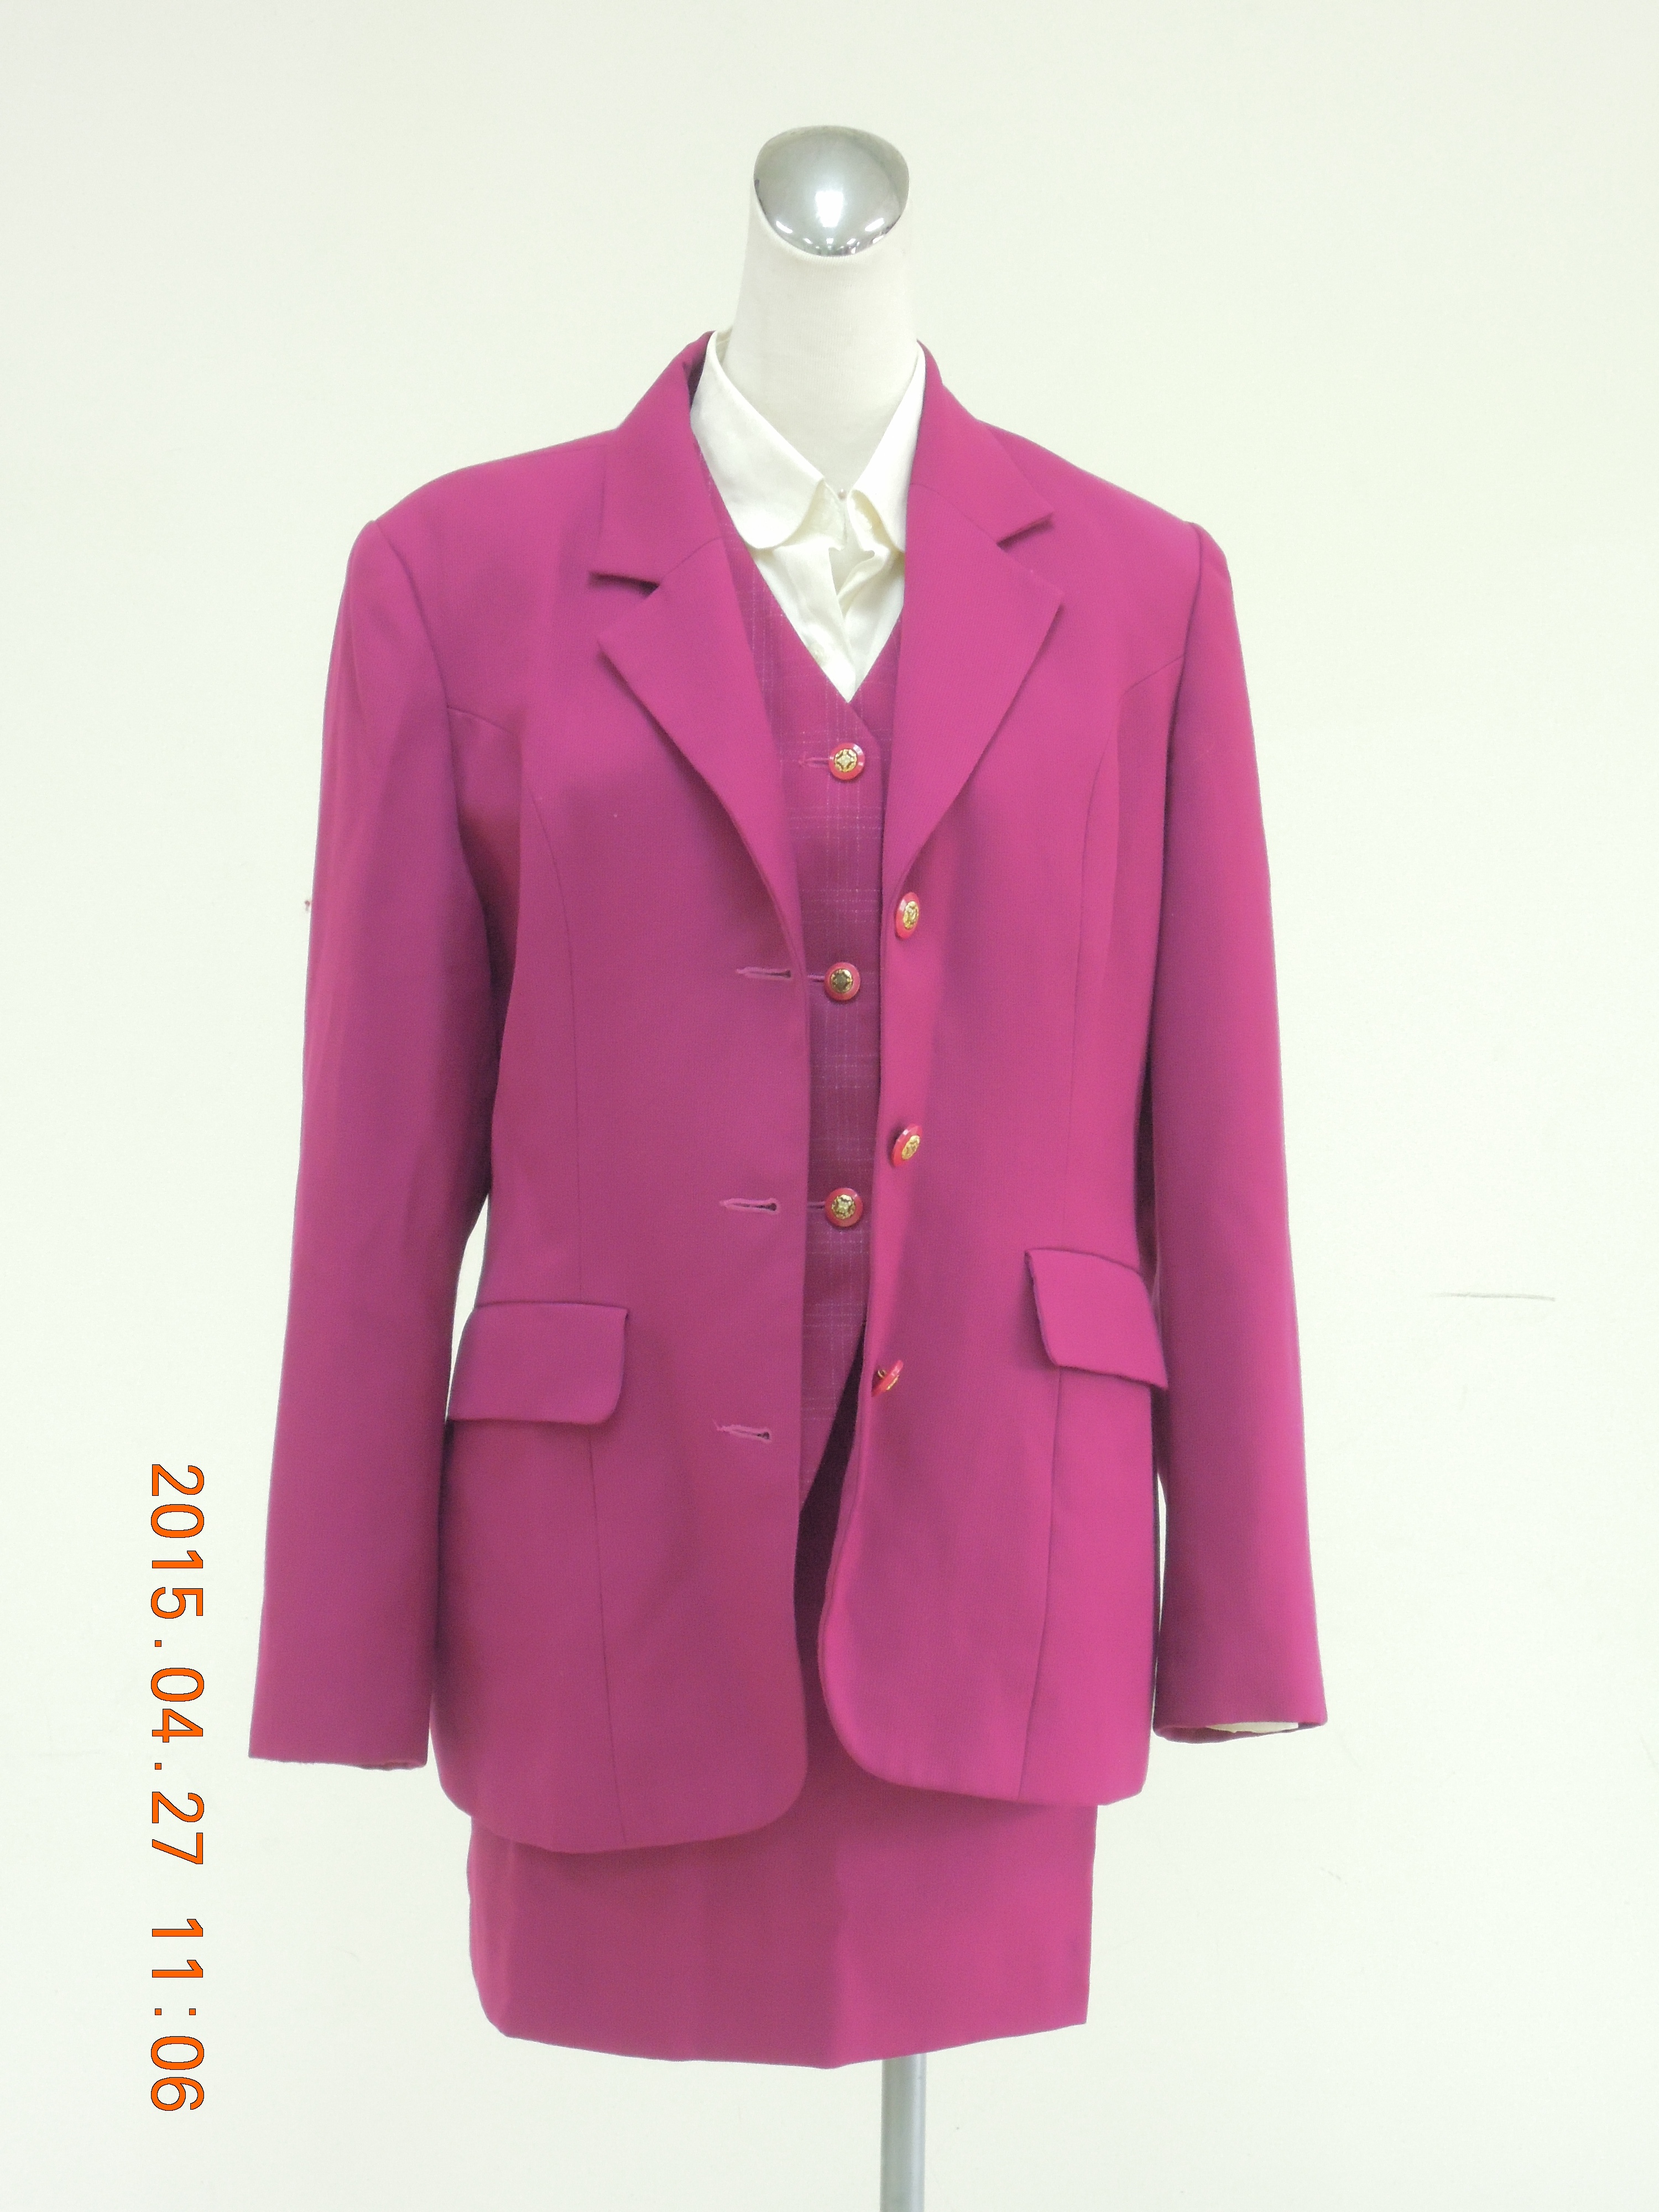 收費員制服之80至89年代冬季紫紅色套裝2